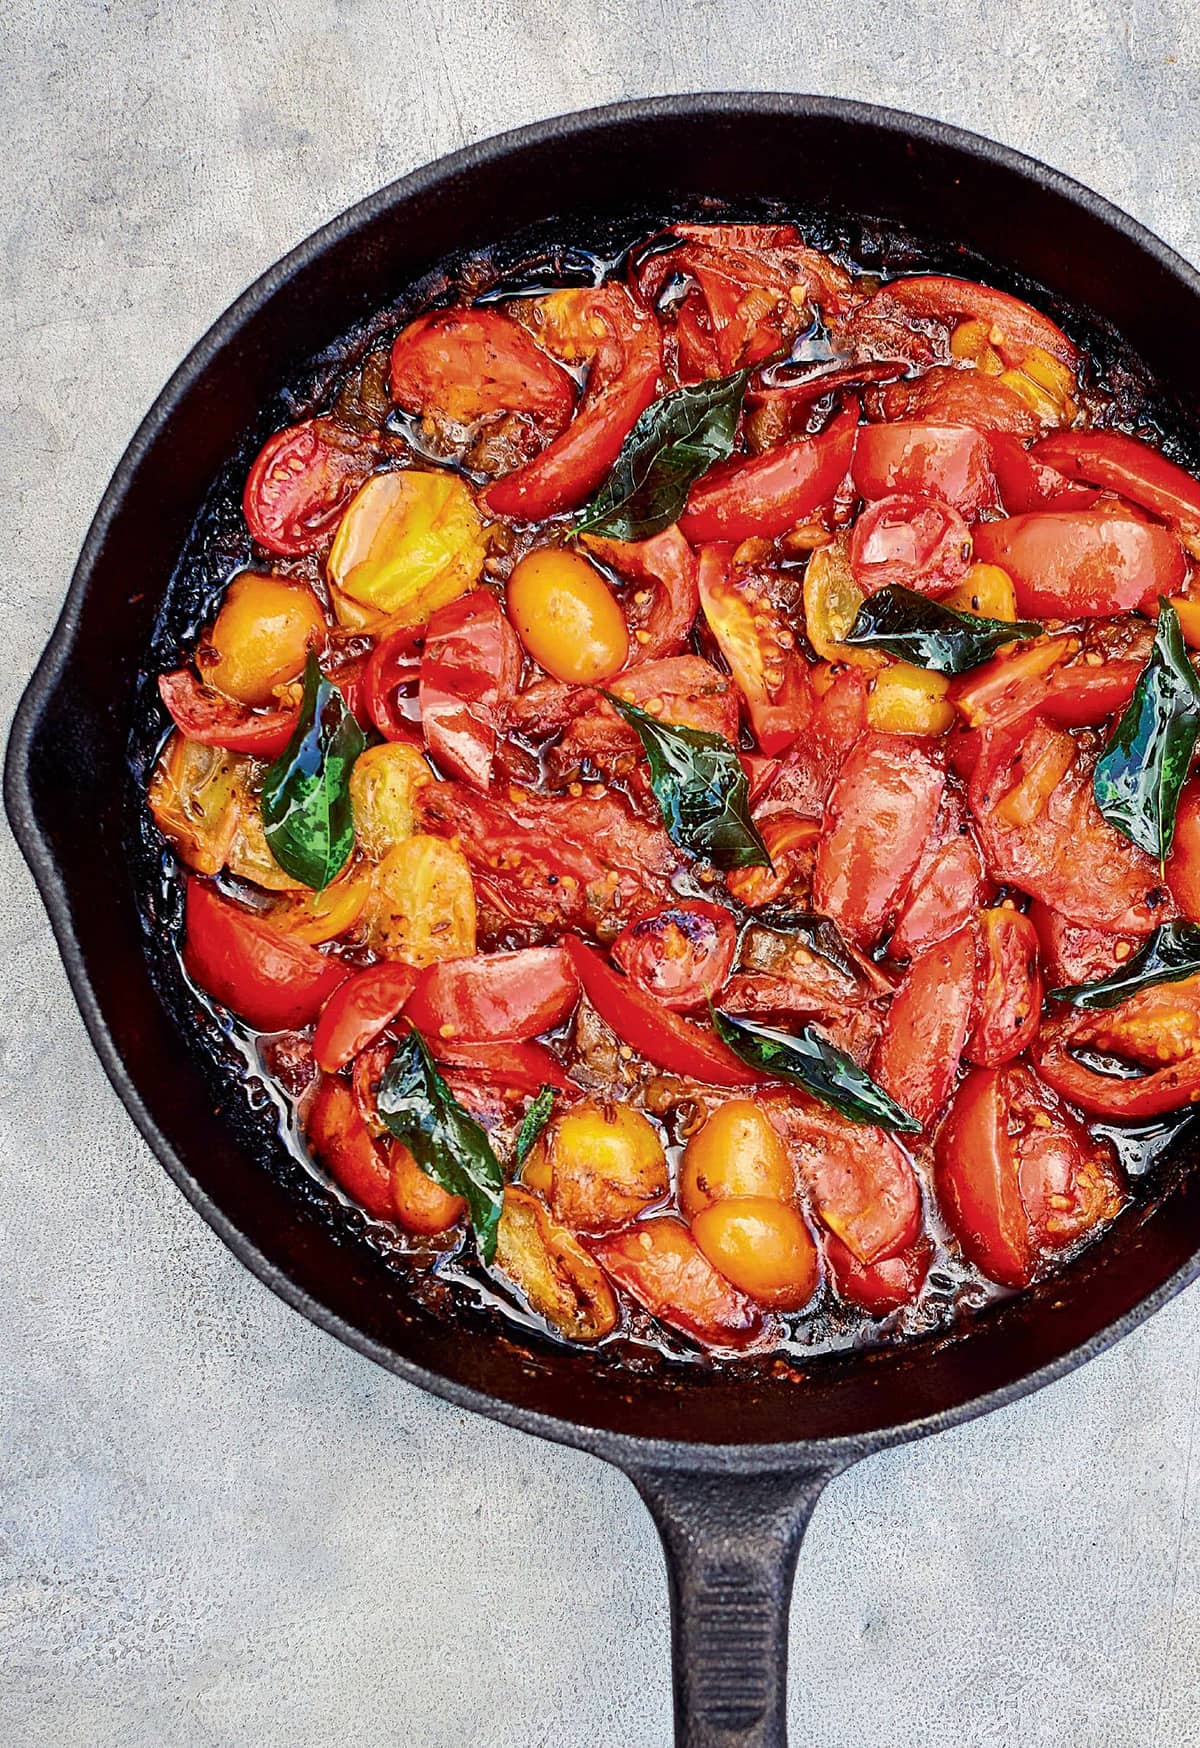 Meera Sodha Tomato Curry | Quick Vegan Recipe